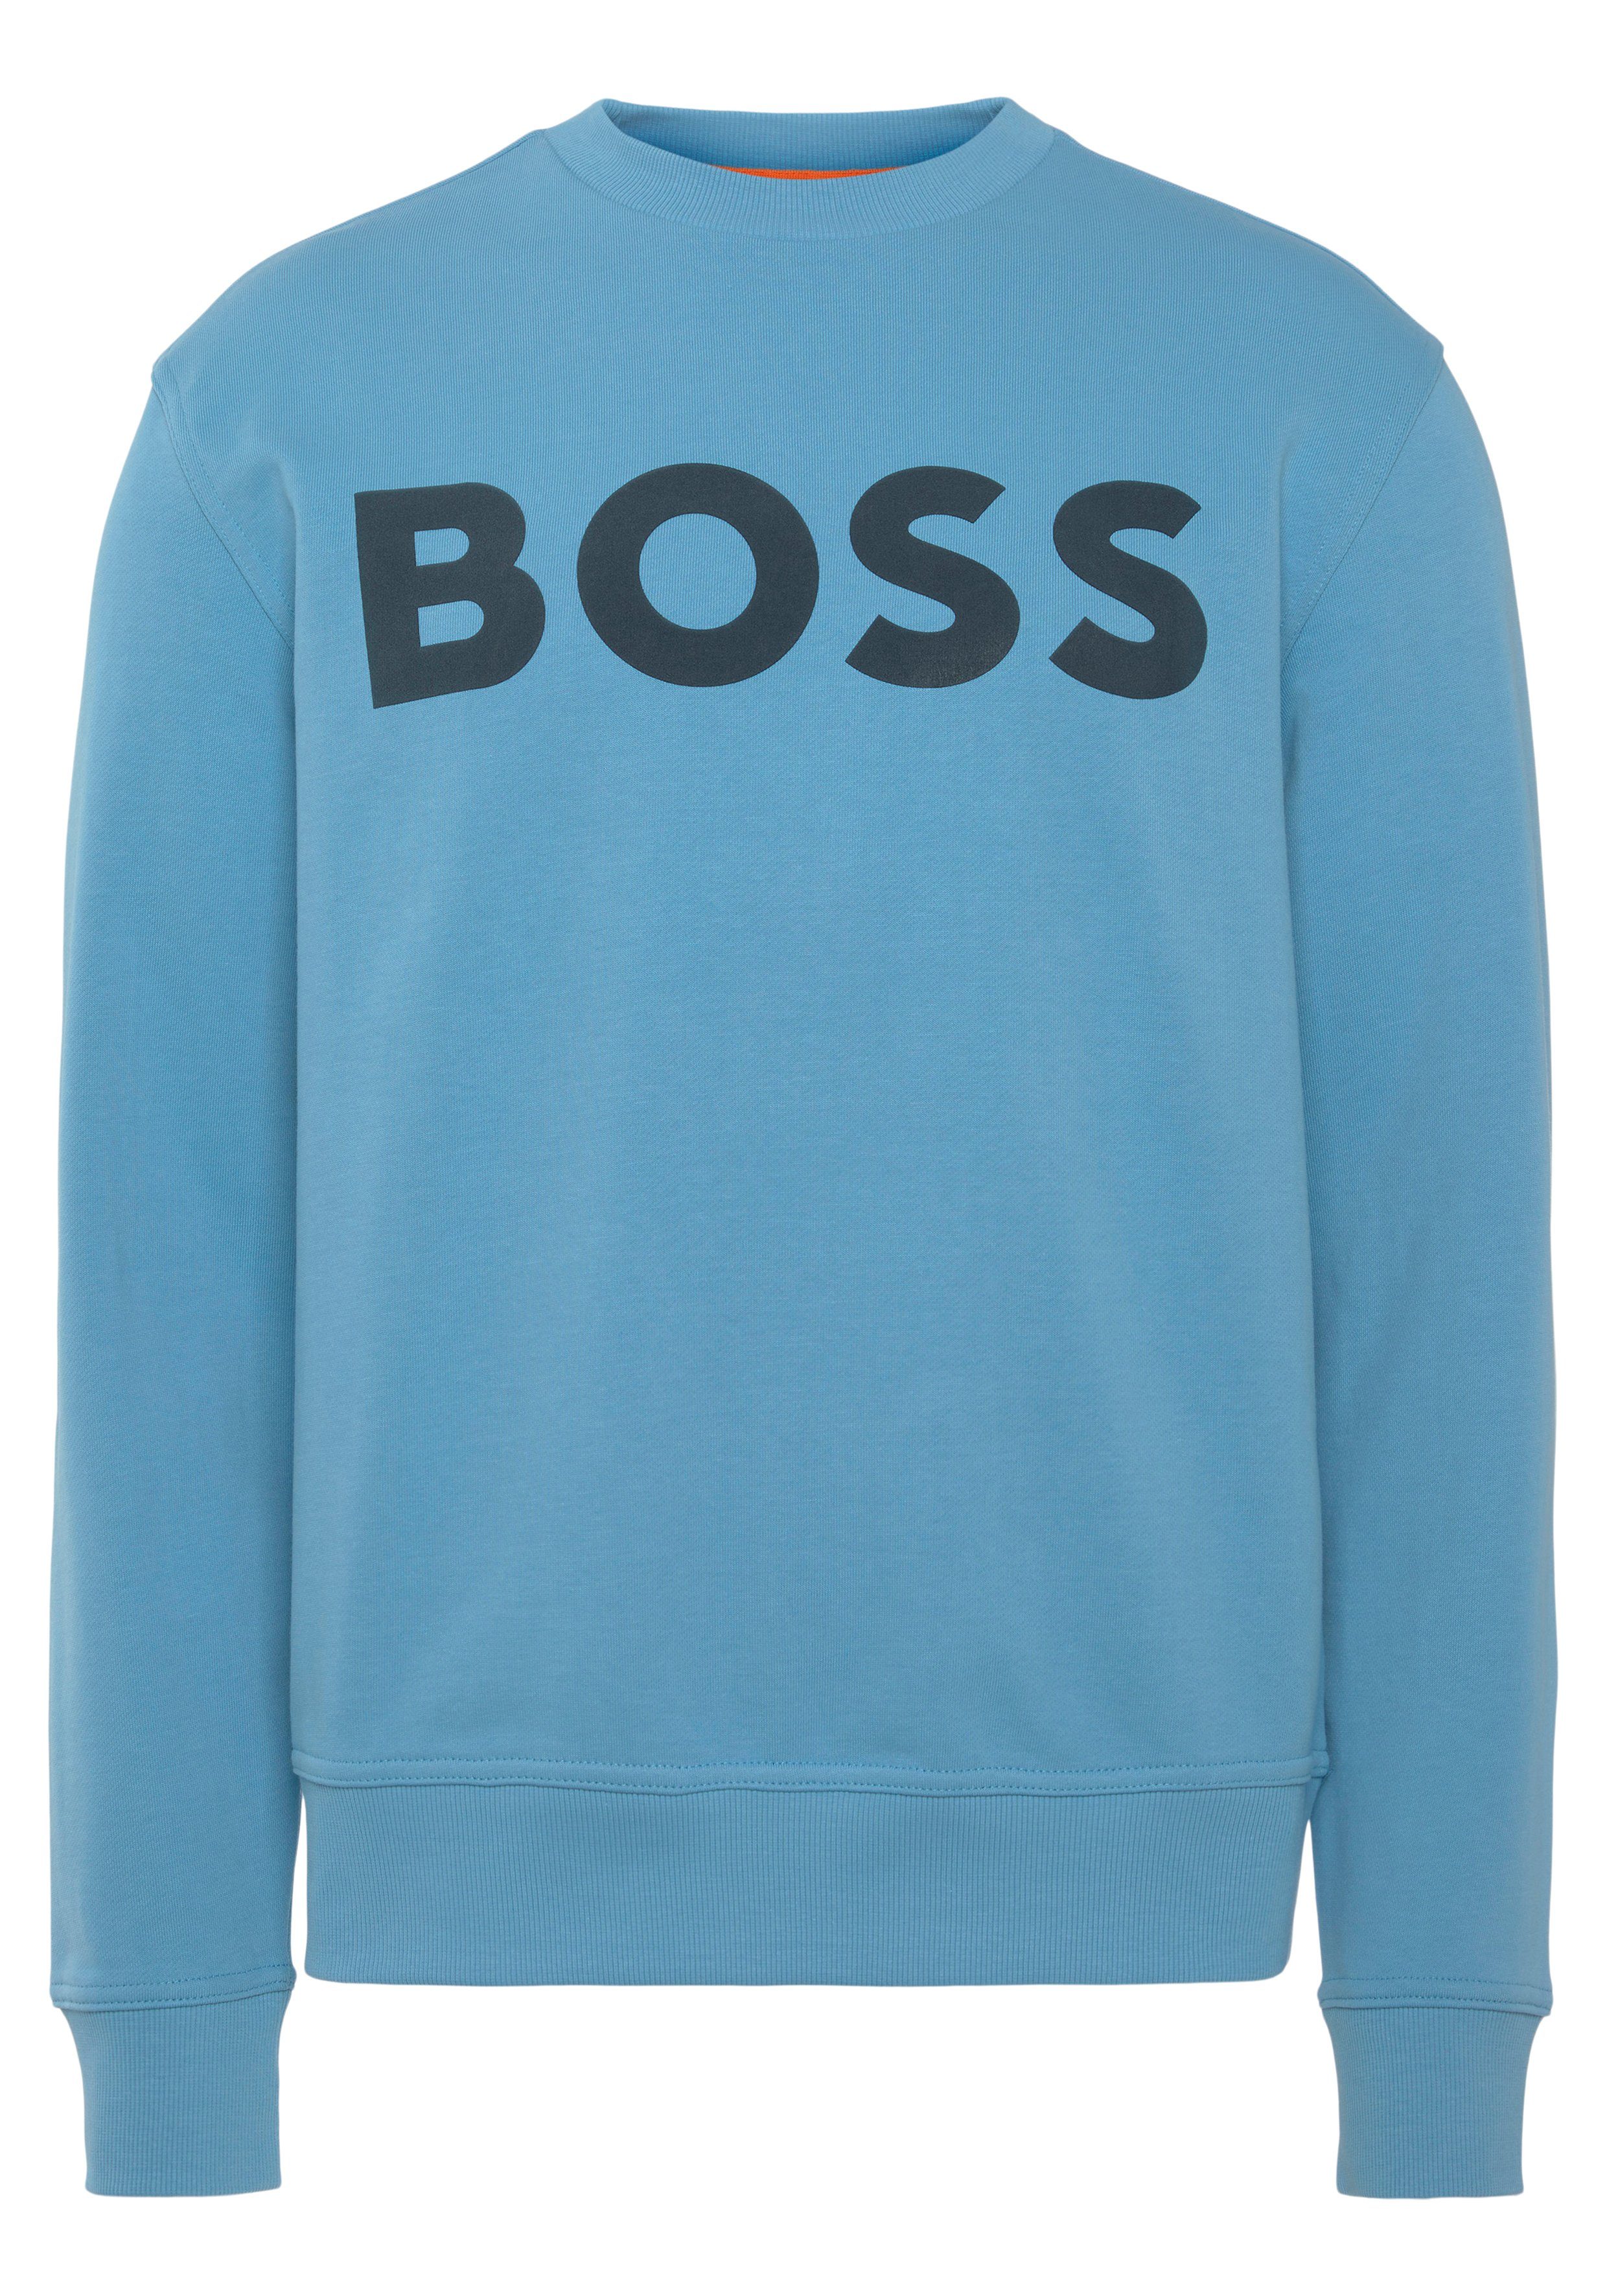 ORANGE Sweatshirt Open BOSS Blue Print WeBasicCrew mit